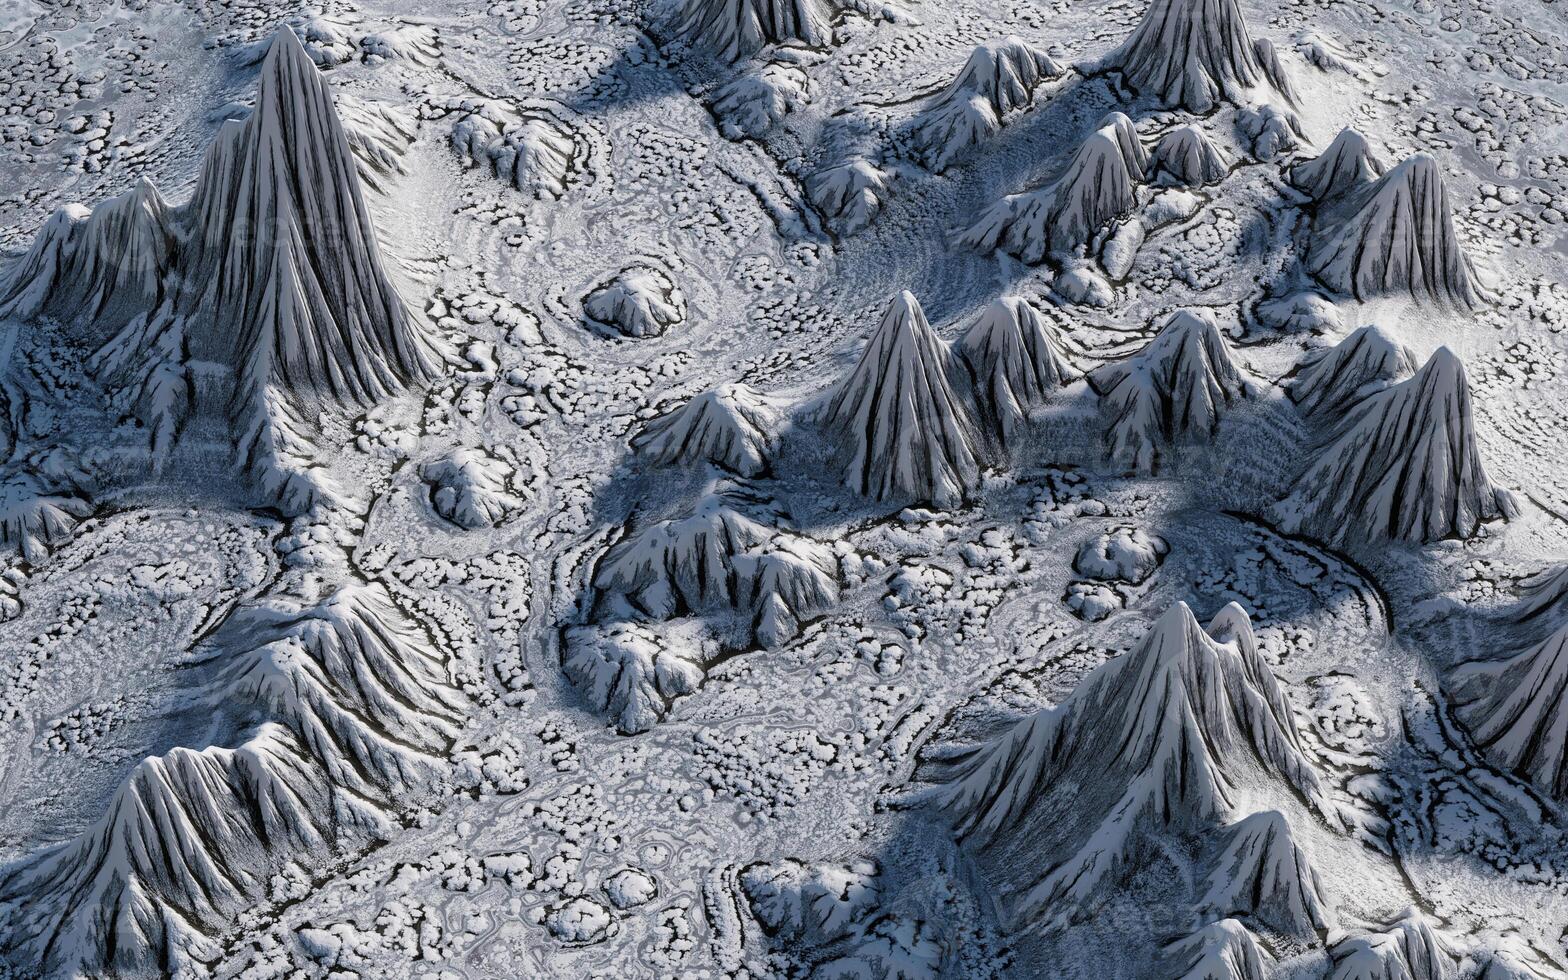 Schnee Berge Landform Hintergrund, 3d Wiedergabe. foto